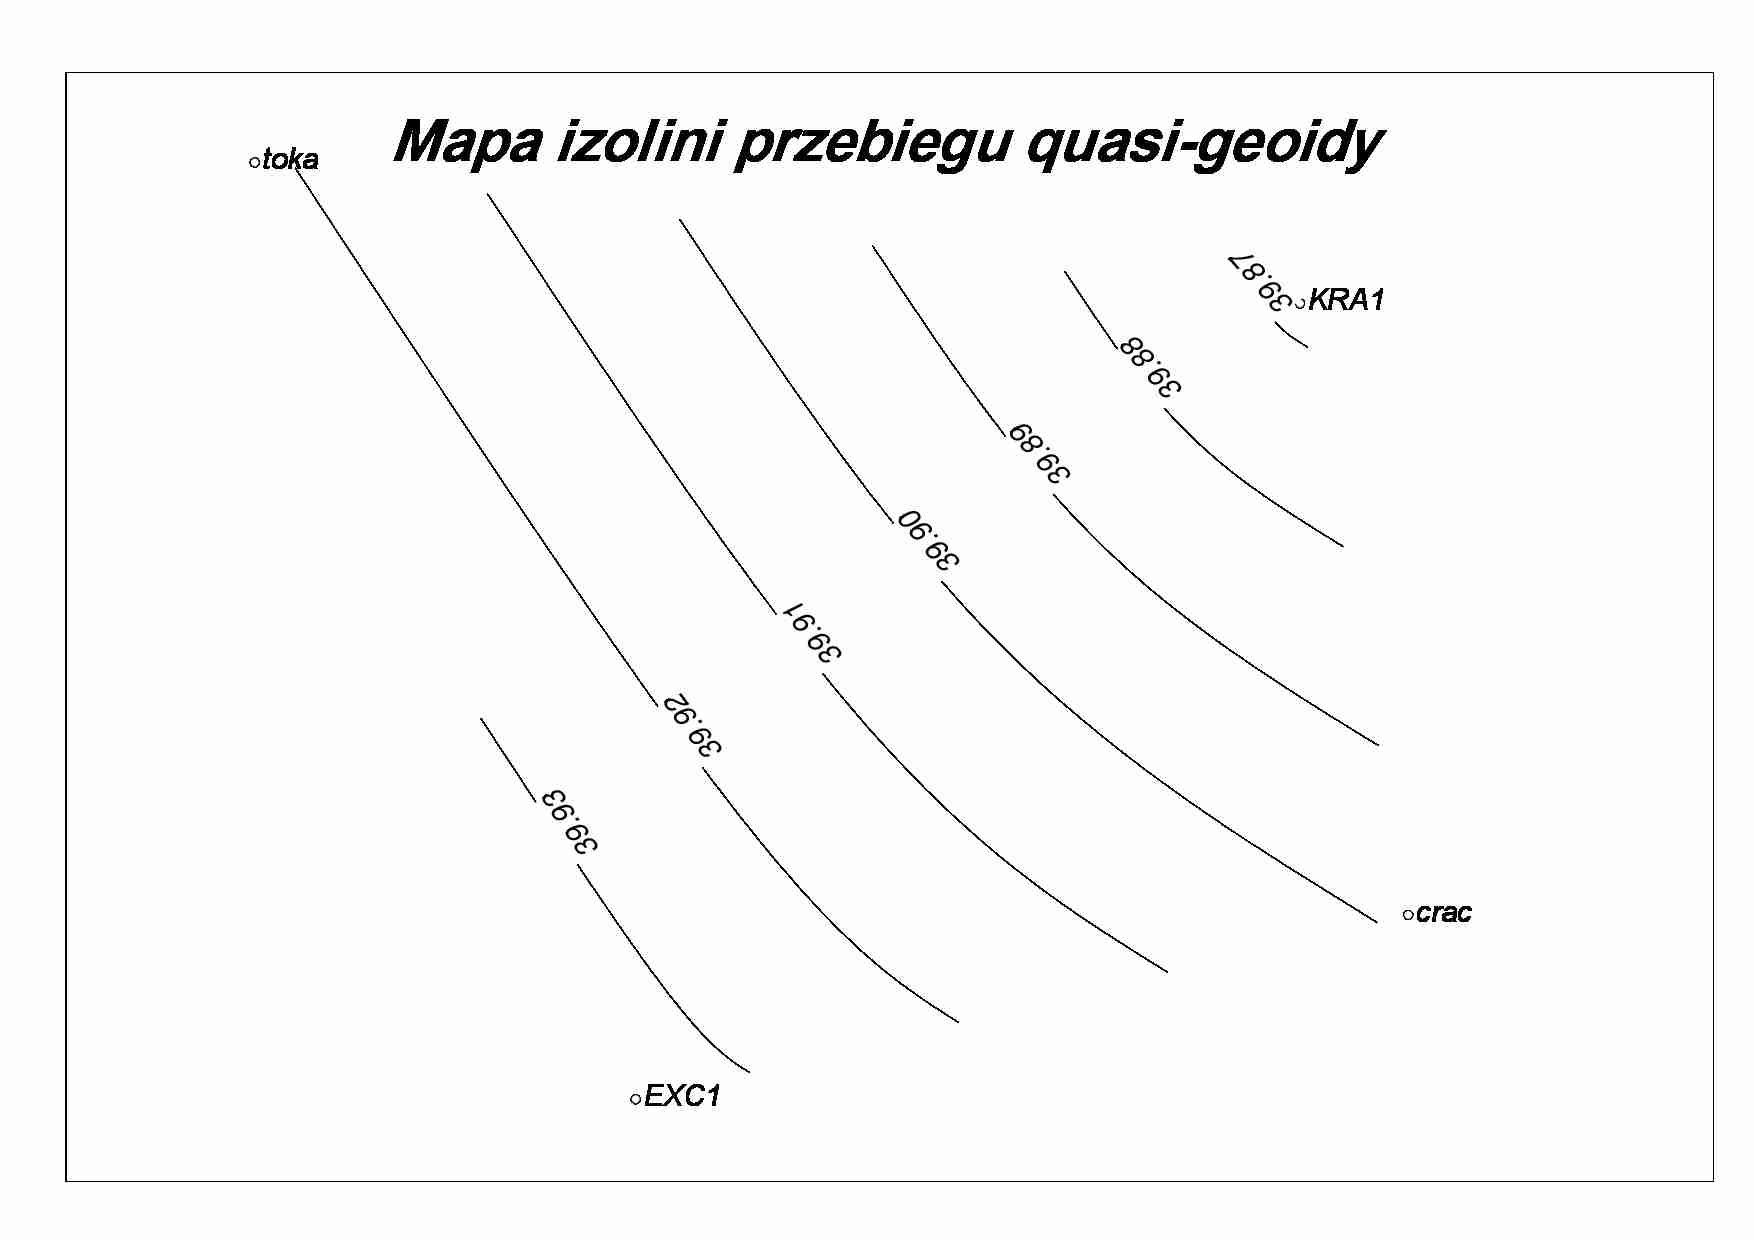 Mapa izolini przebiegu quasi- geoidy - strona 1